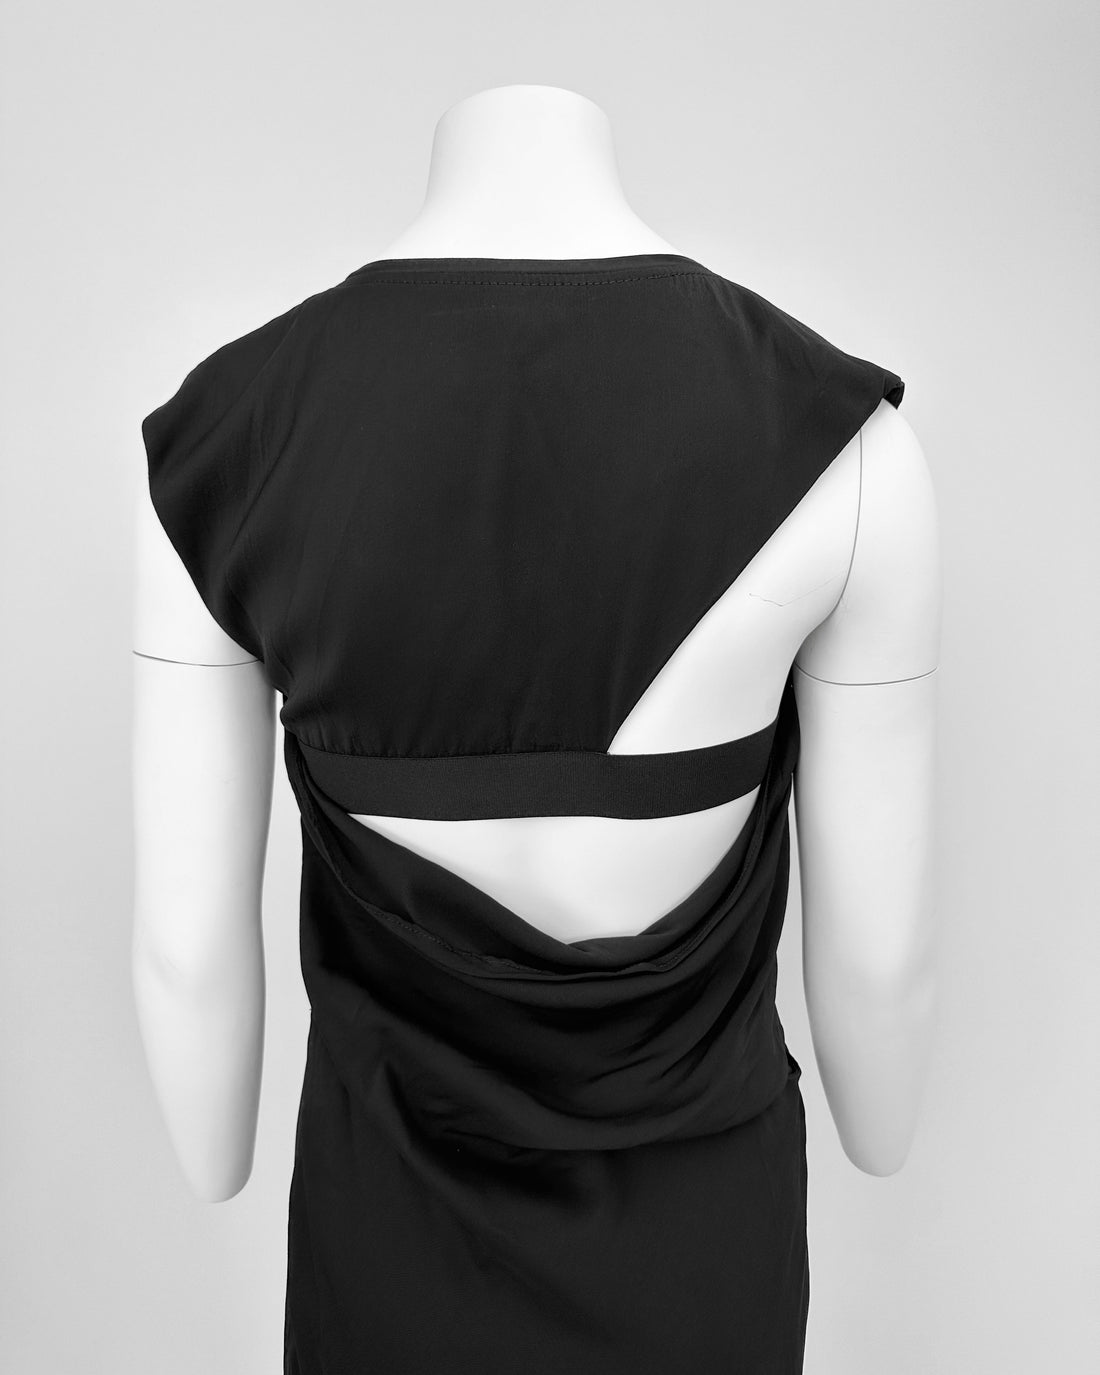 Helmut Lang 2-Pieces Black Dress 2000's